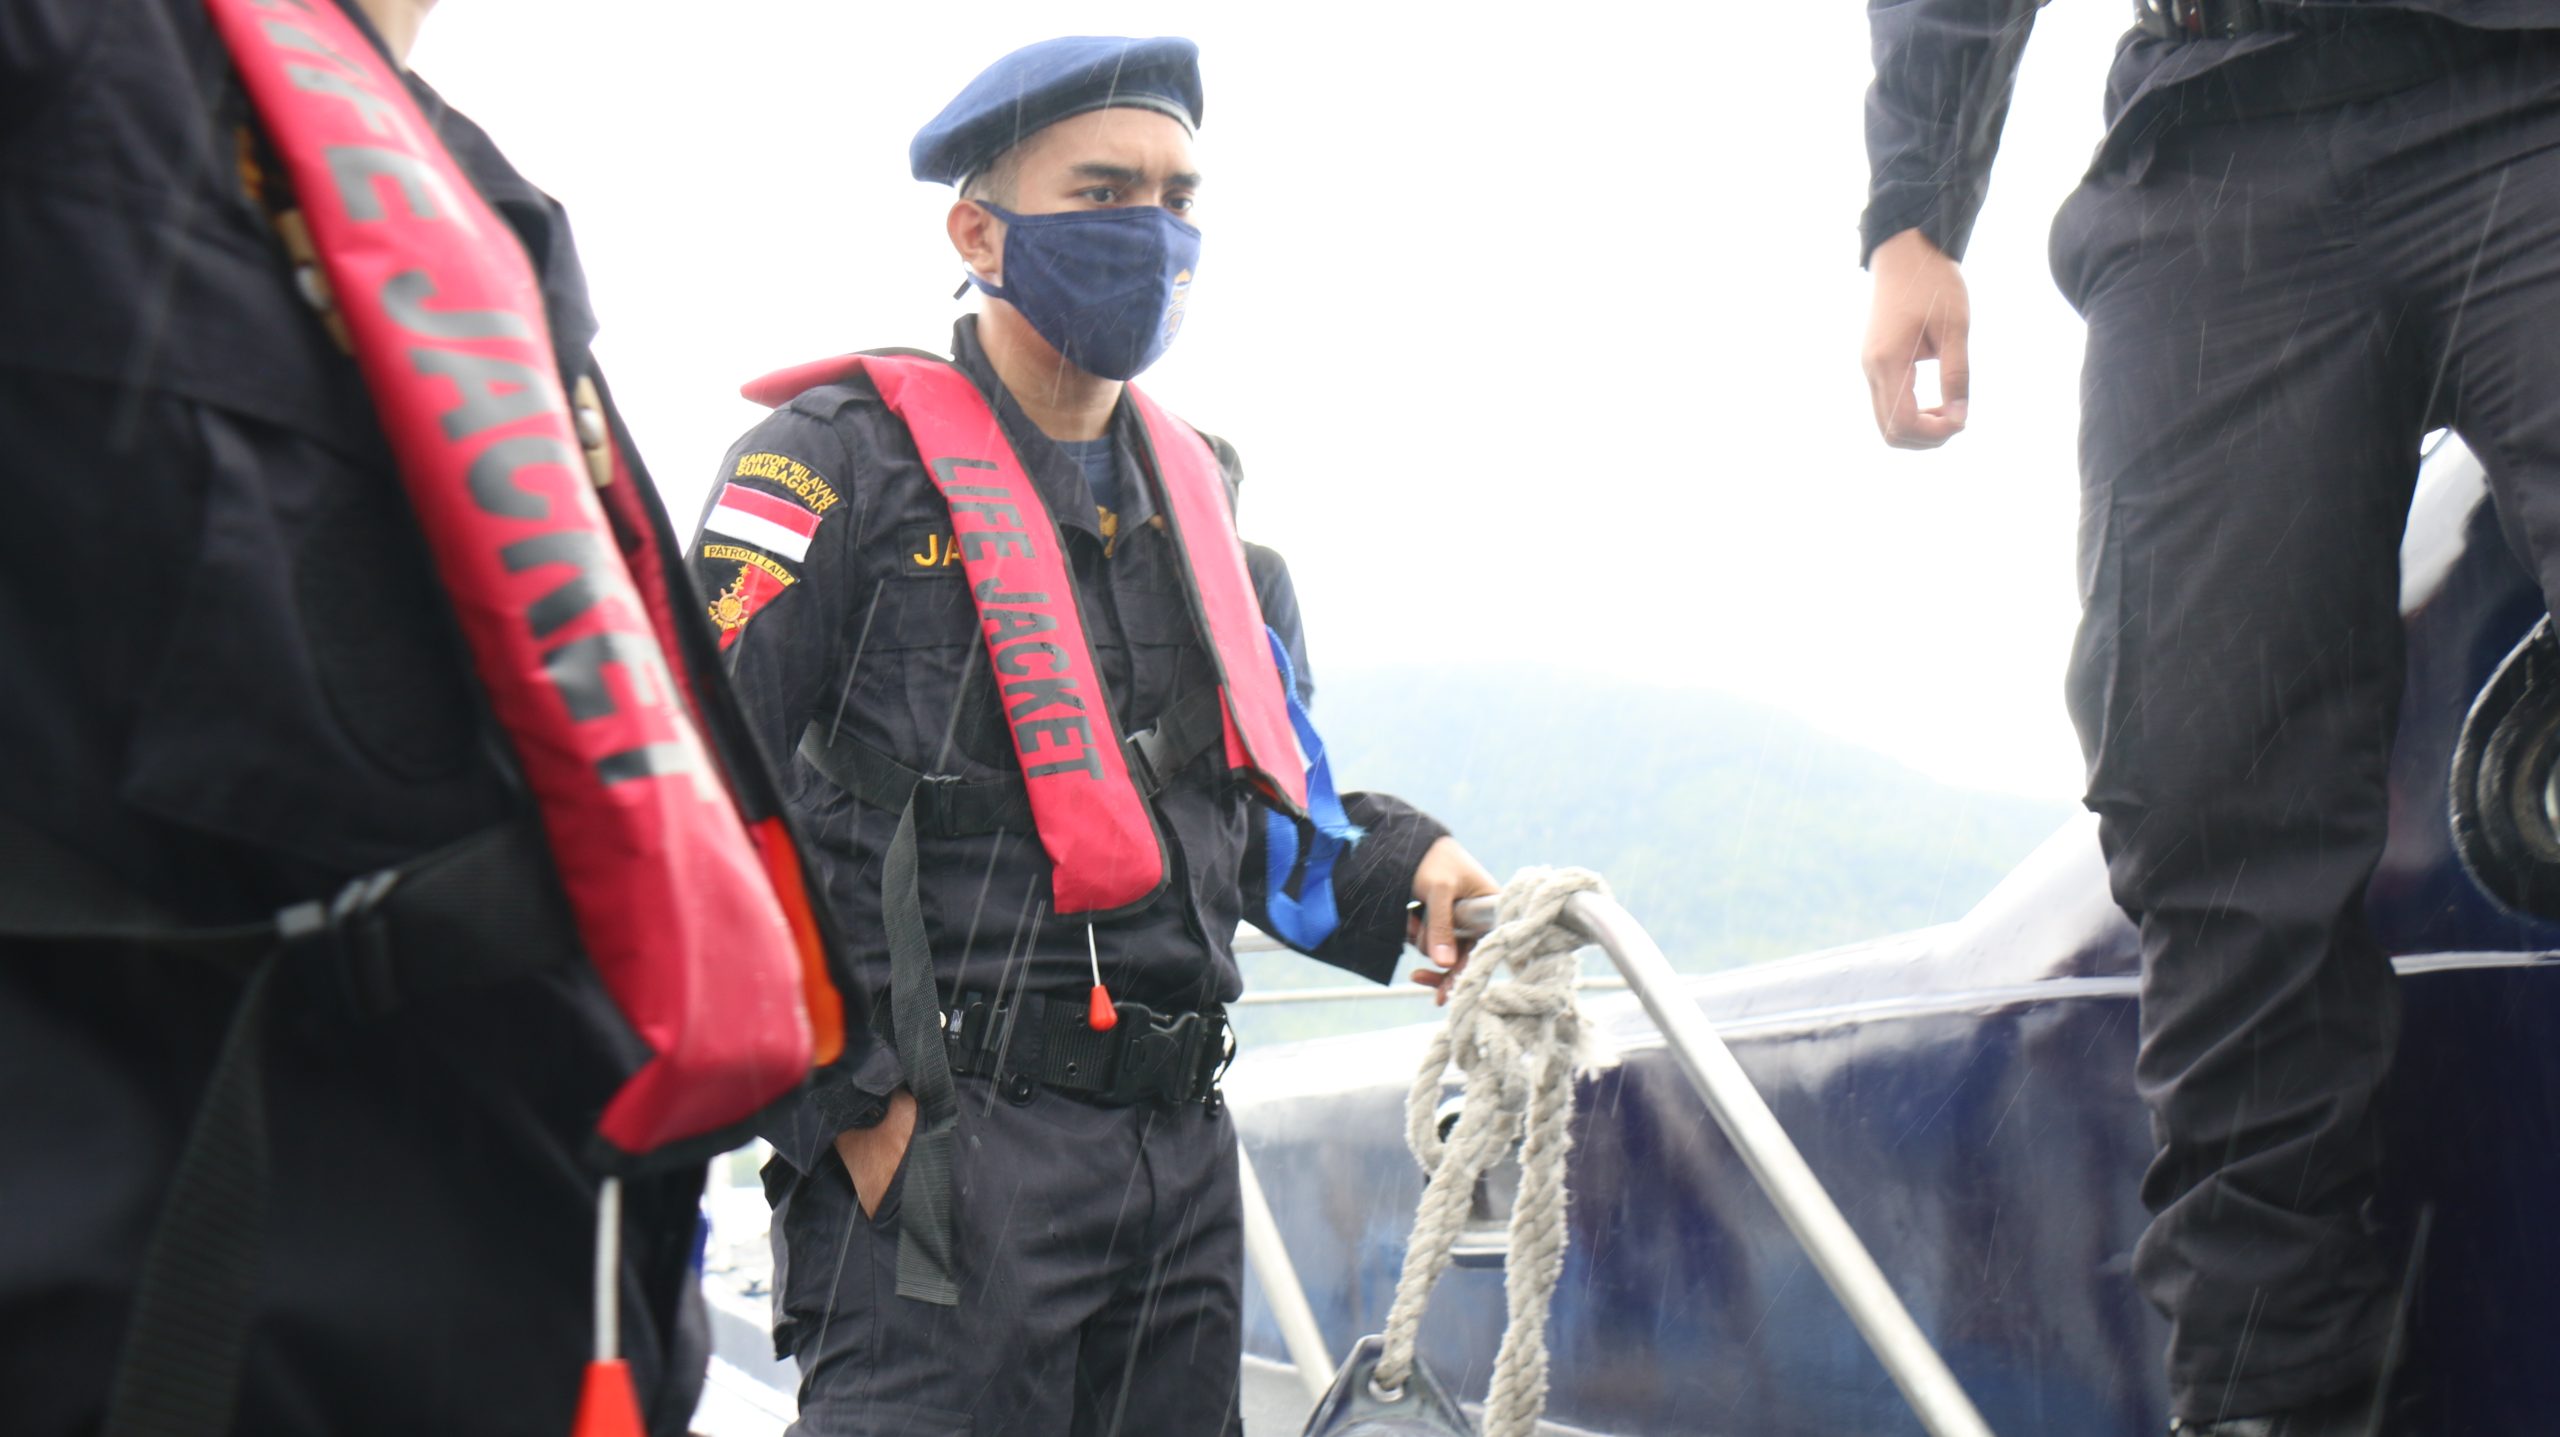 Kanwil DJBC Sumbagbar dan Bea Cukai Bandar Lampung Bersinergi dengan Dit. Polairud Polda Lampung Melakukan Patroli Laut Bersama untuk Mengamankan Kedaulatan Maritim NKRI